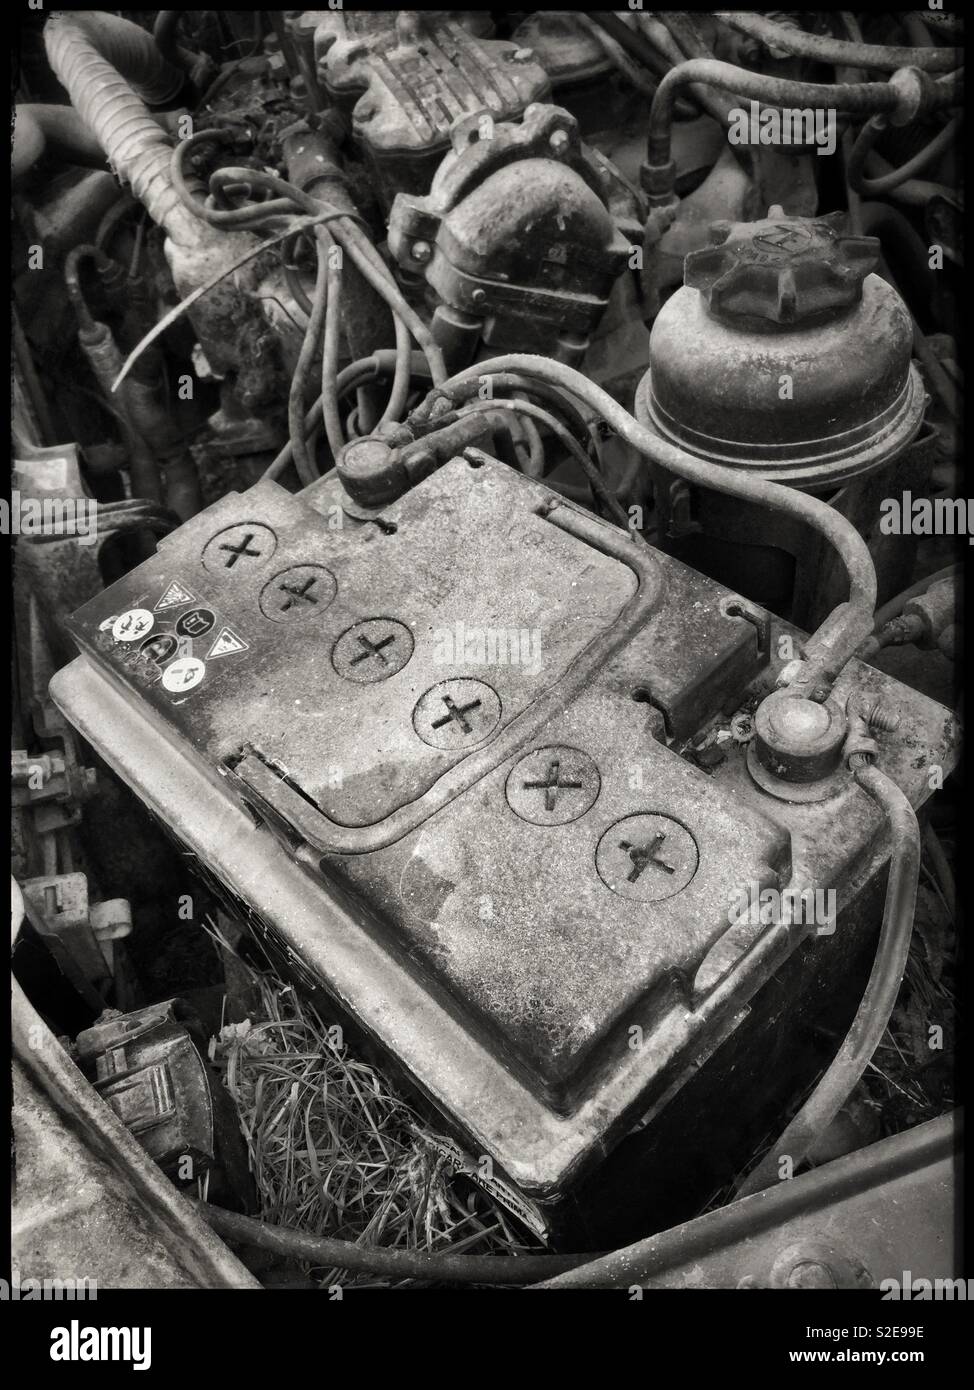 Abandoned Vauxhall Cavalier engine. Stock Photo